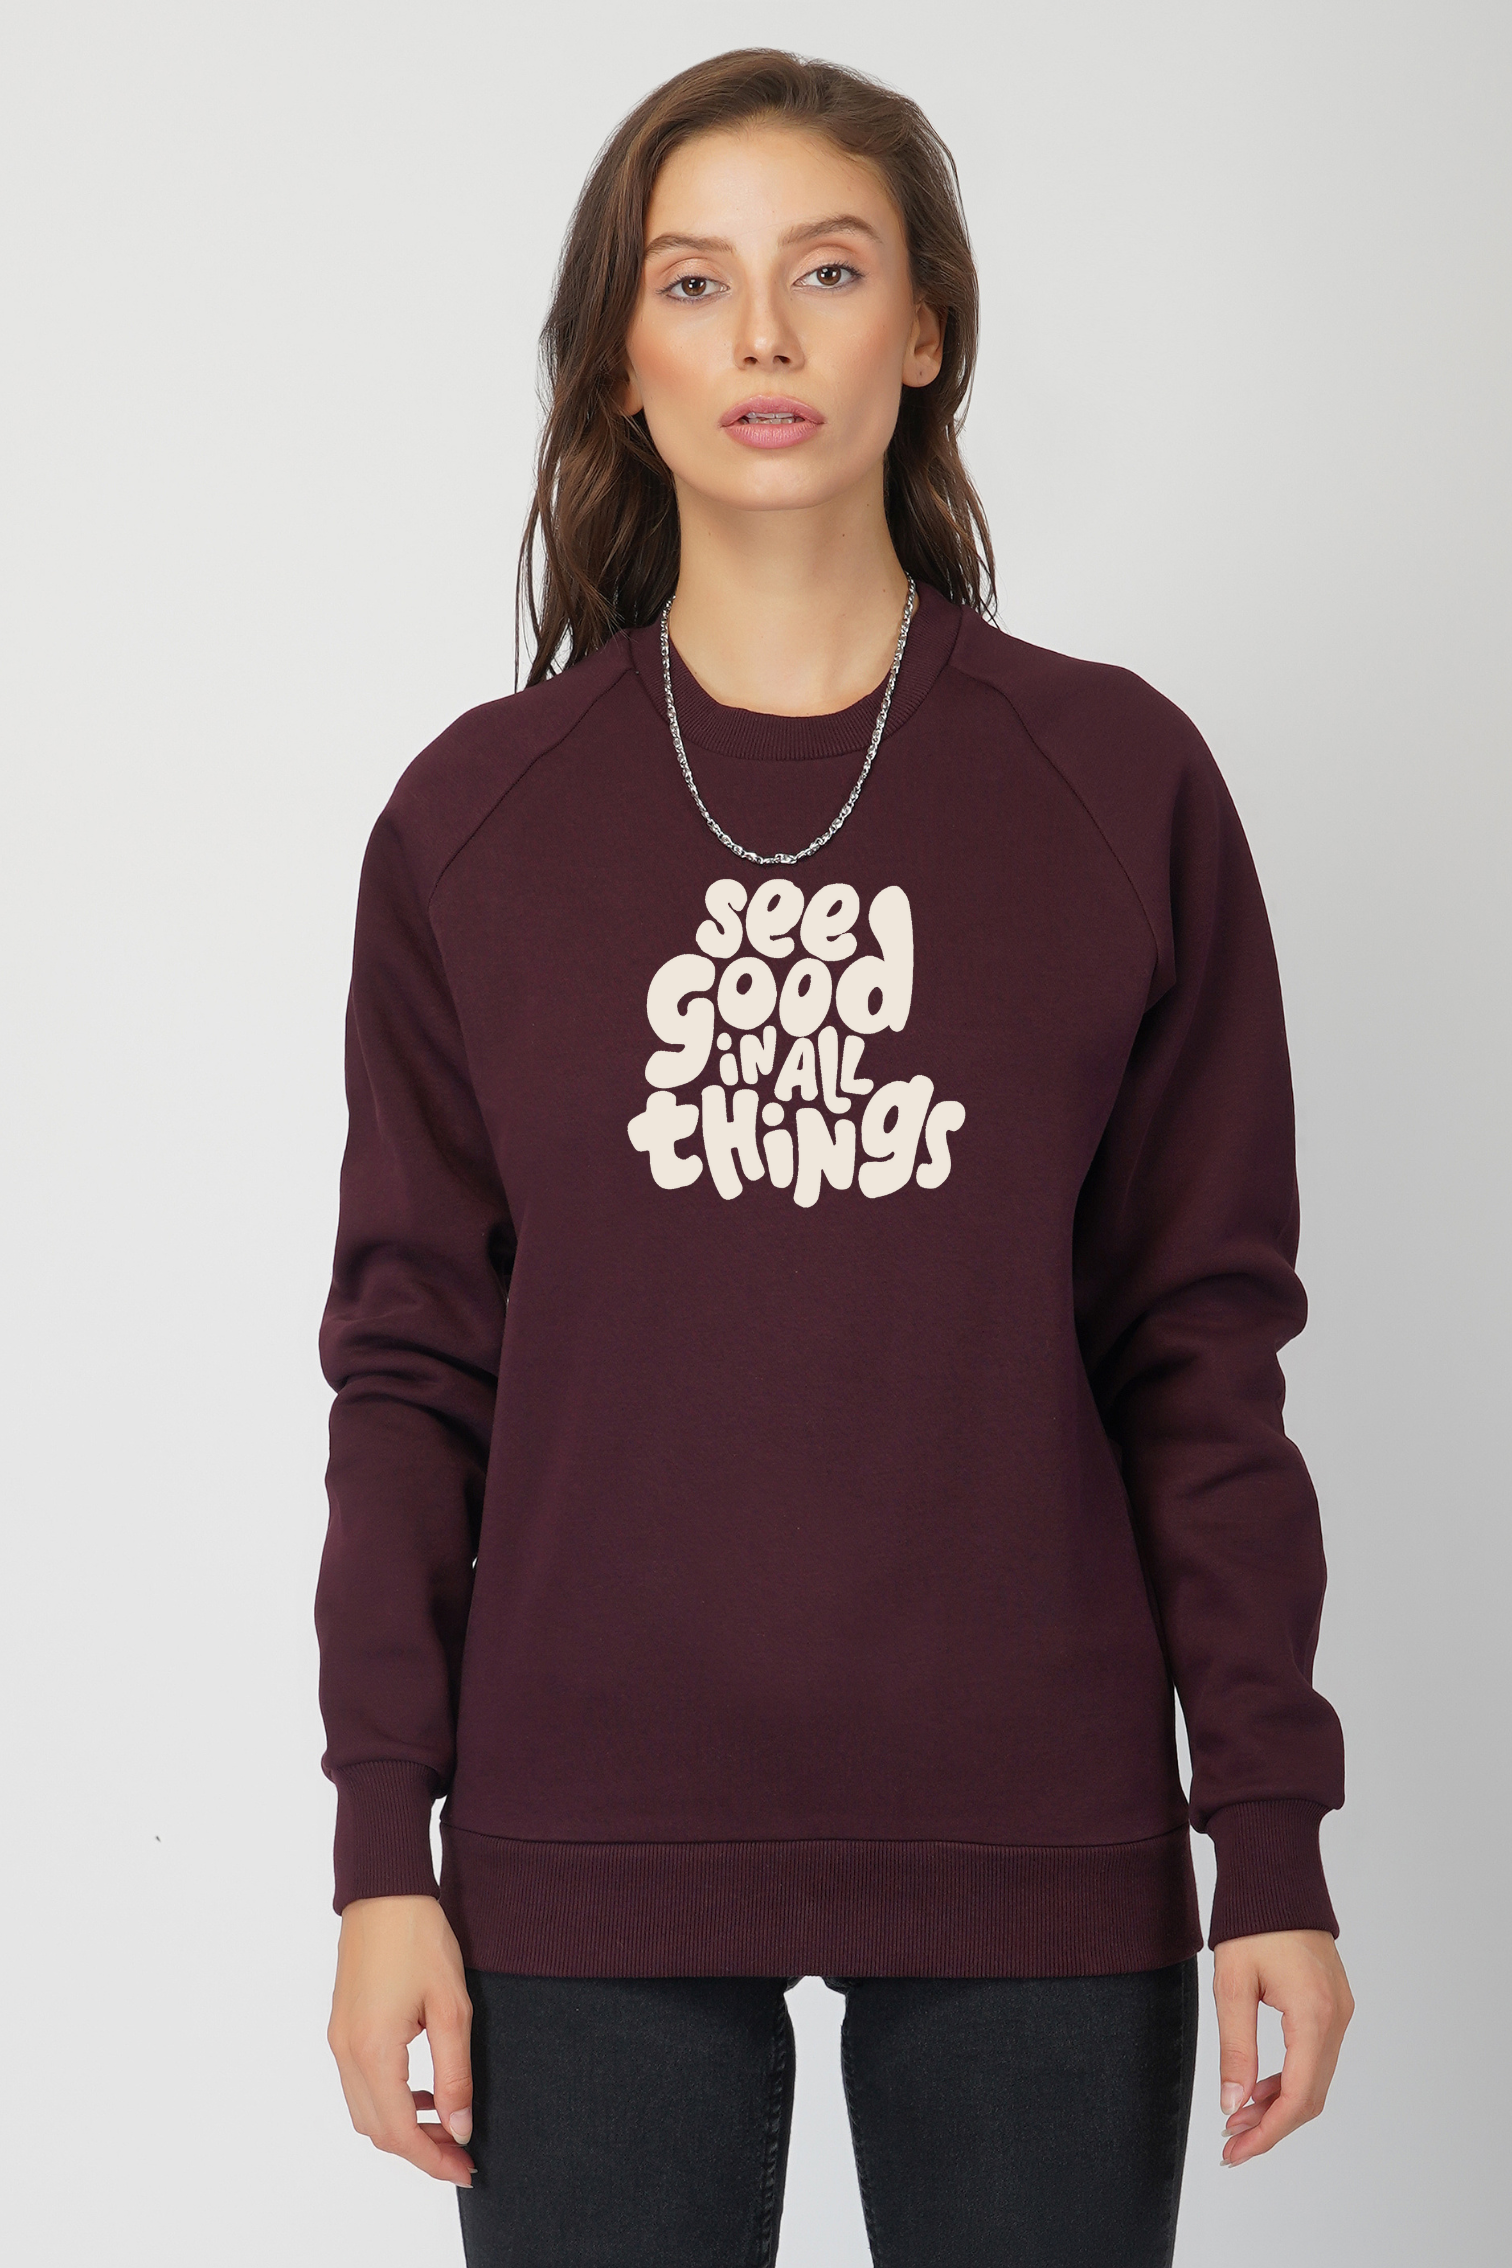 See good in all things- Sweatshirt